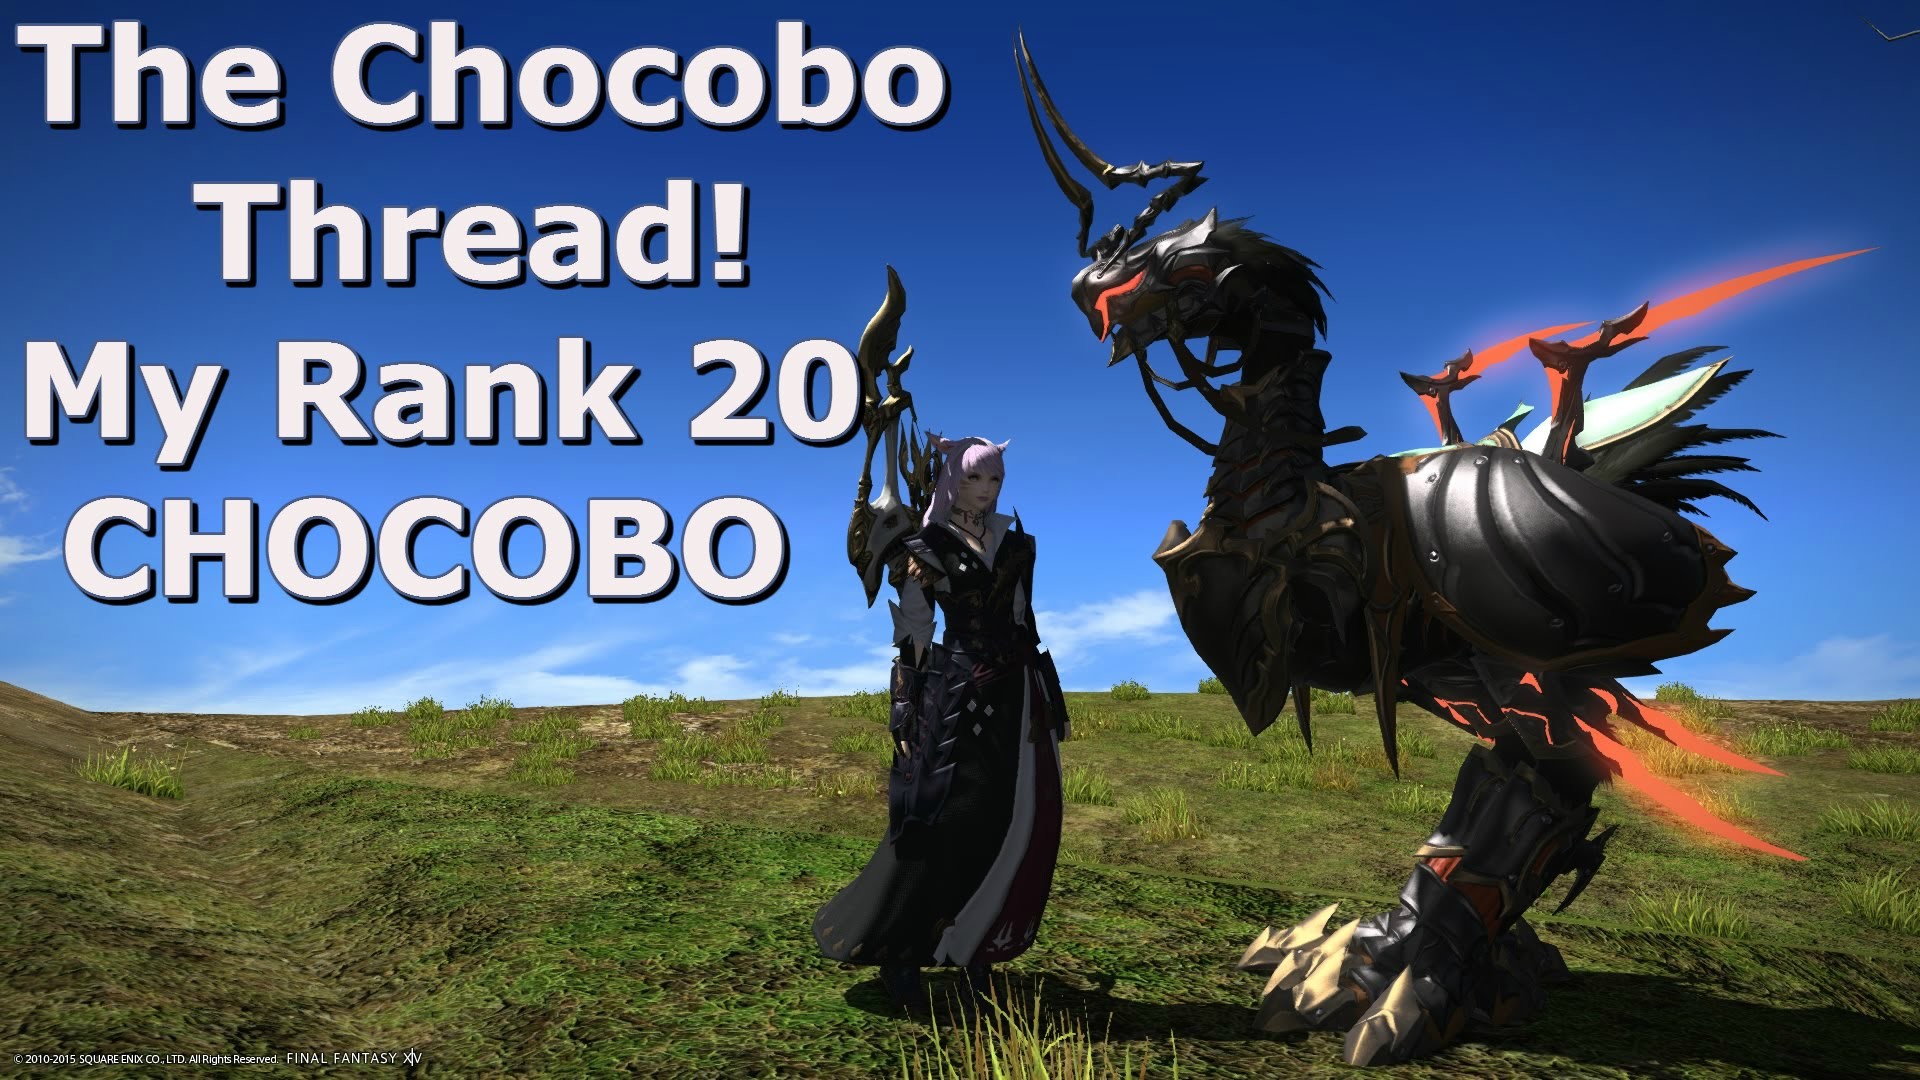 1920x1080 ãFINAL FANTASY XIVãHeavensward: The Chocobo Thread "My Rank 20 Chocobo  (Guide)" - YouTube